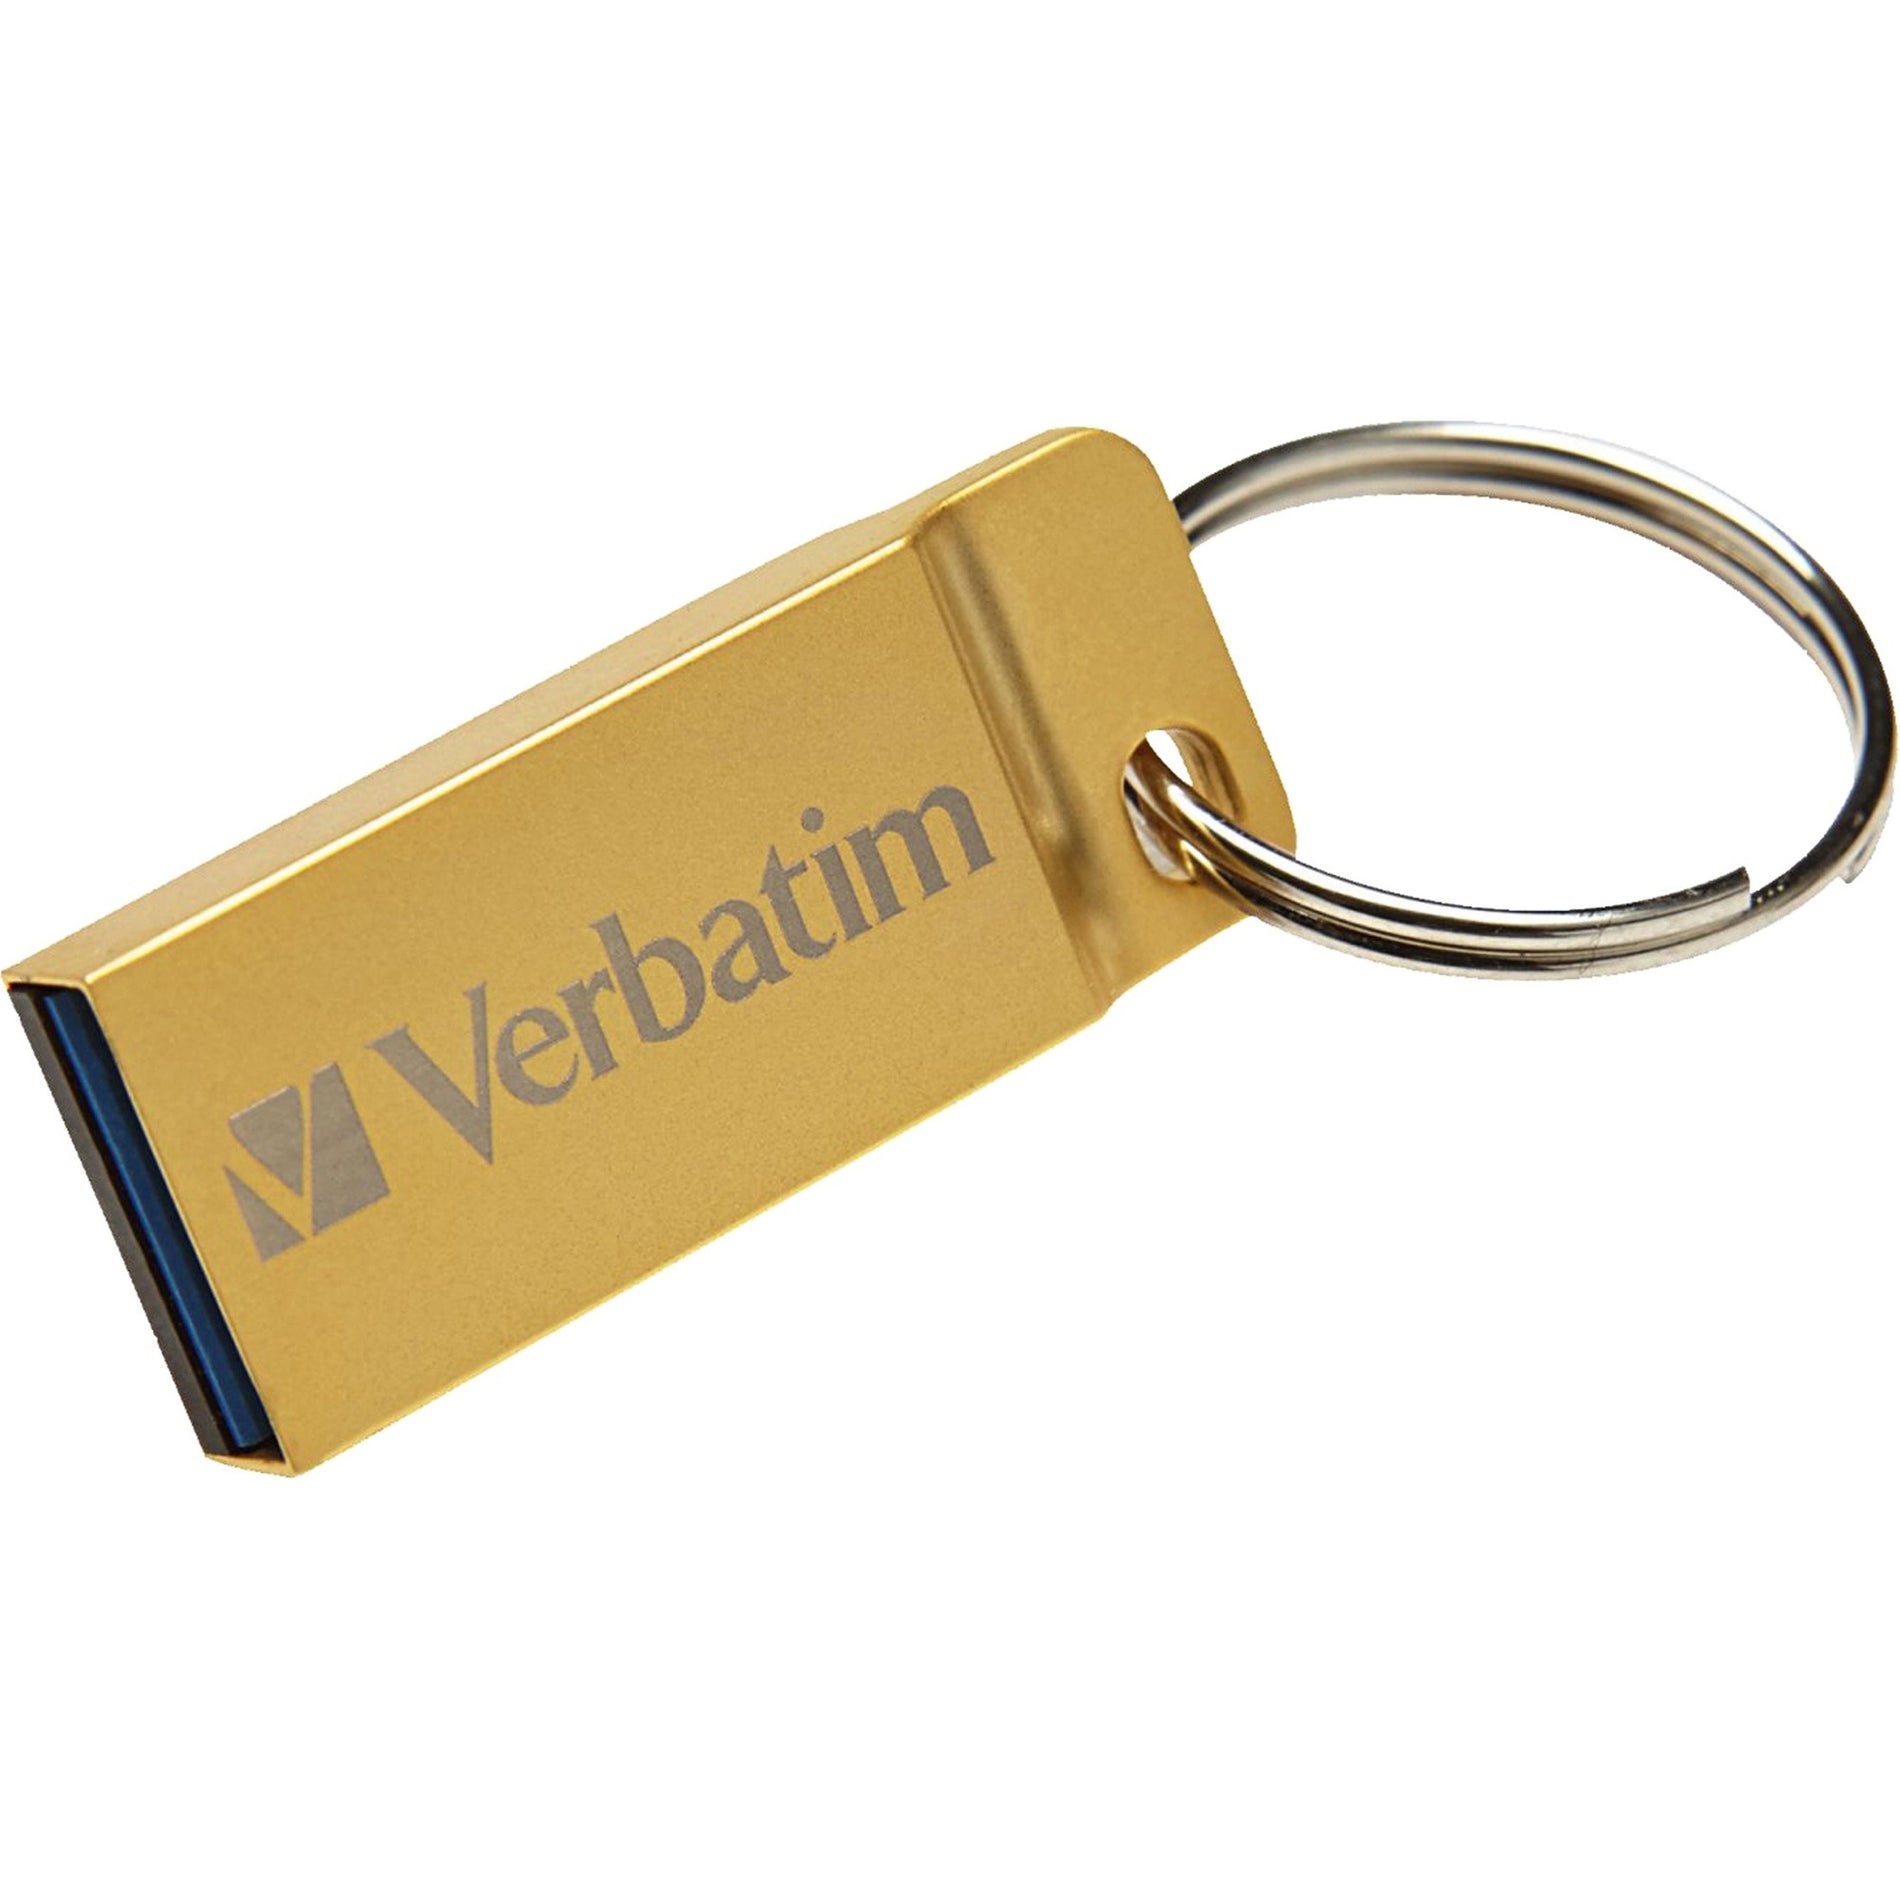 Verbatim 99106 Metal Executive USB 3.0 Flash Drive, 64GB, Gold, Water Resistant